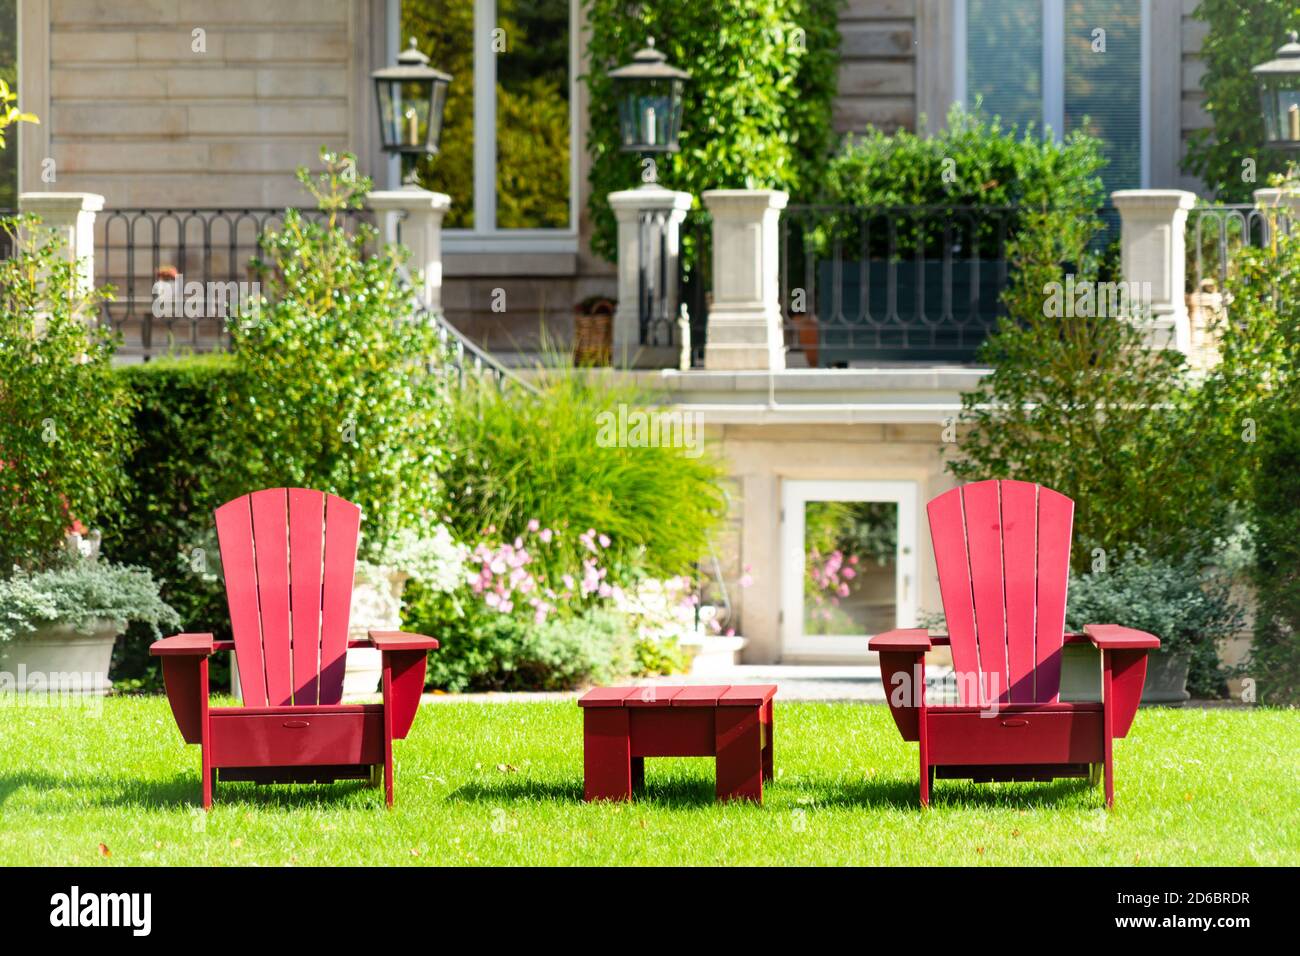 Mobilier de jardin rouge sur une pelouse avec un manoir majestueux en arrière-plan Banque D'Images